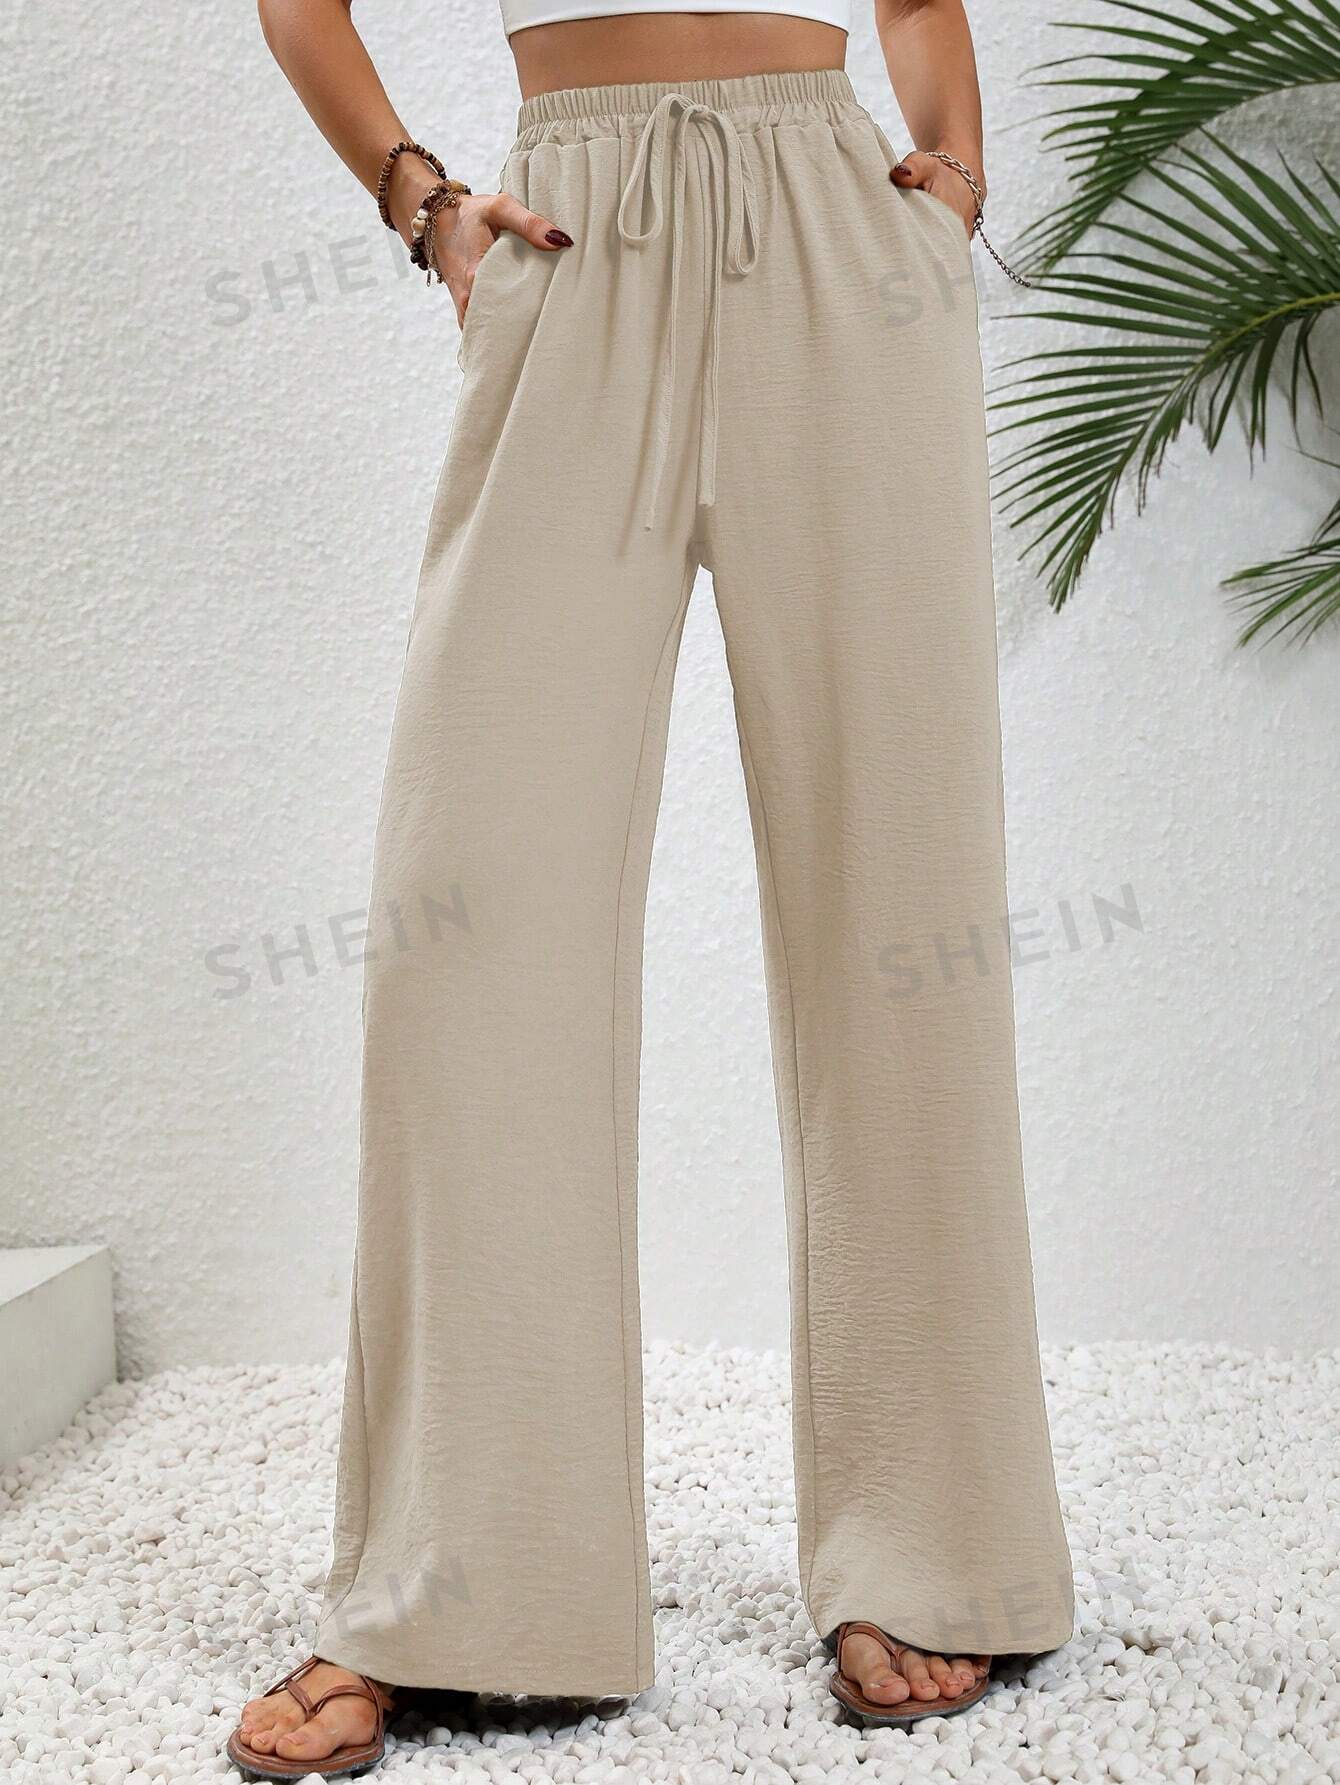 SHEIN LUNE женские однотонные длинные брюки с завышенной талией и завязками на талии и карманами, абрикос